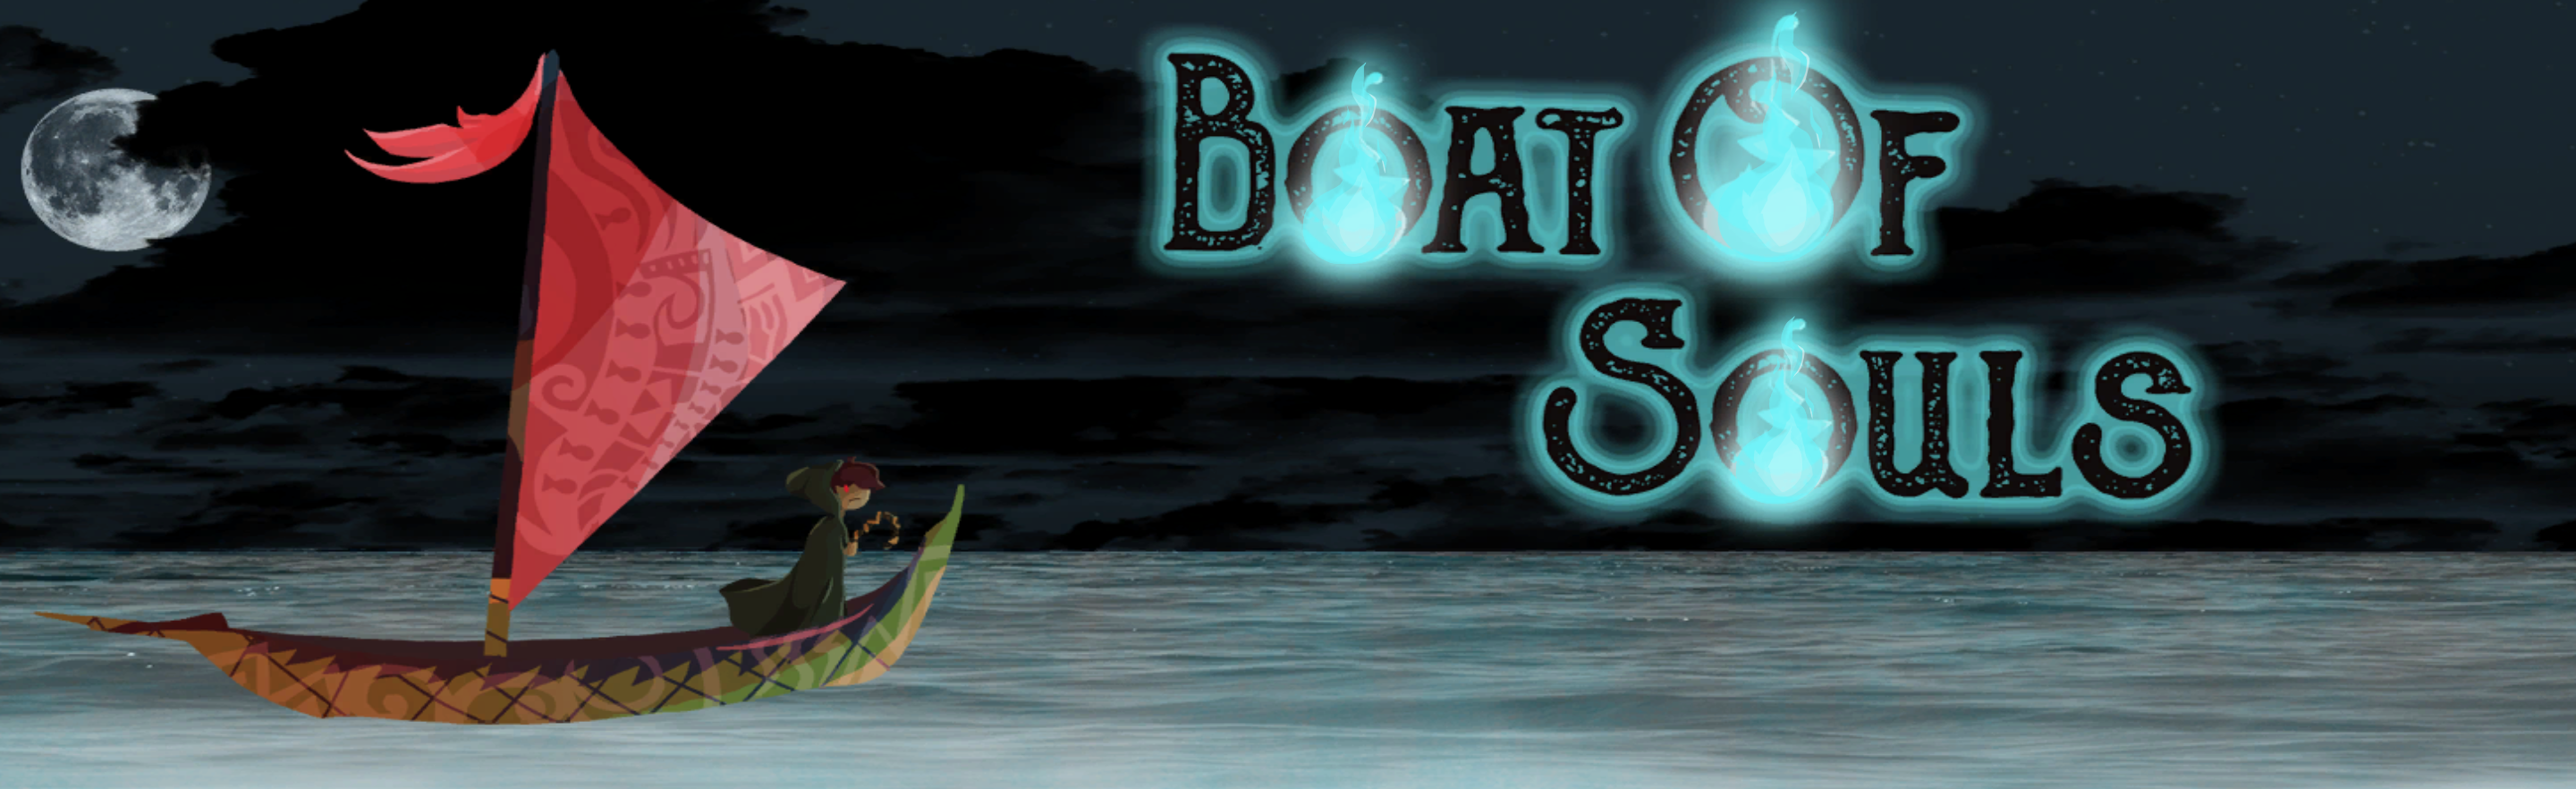 Boat Of Souls